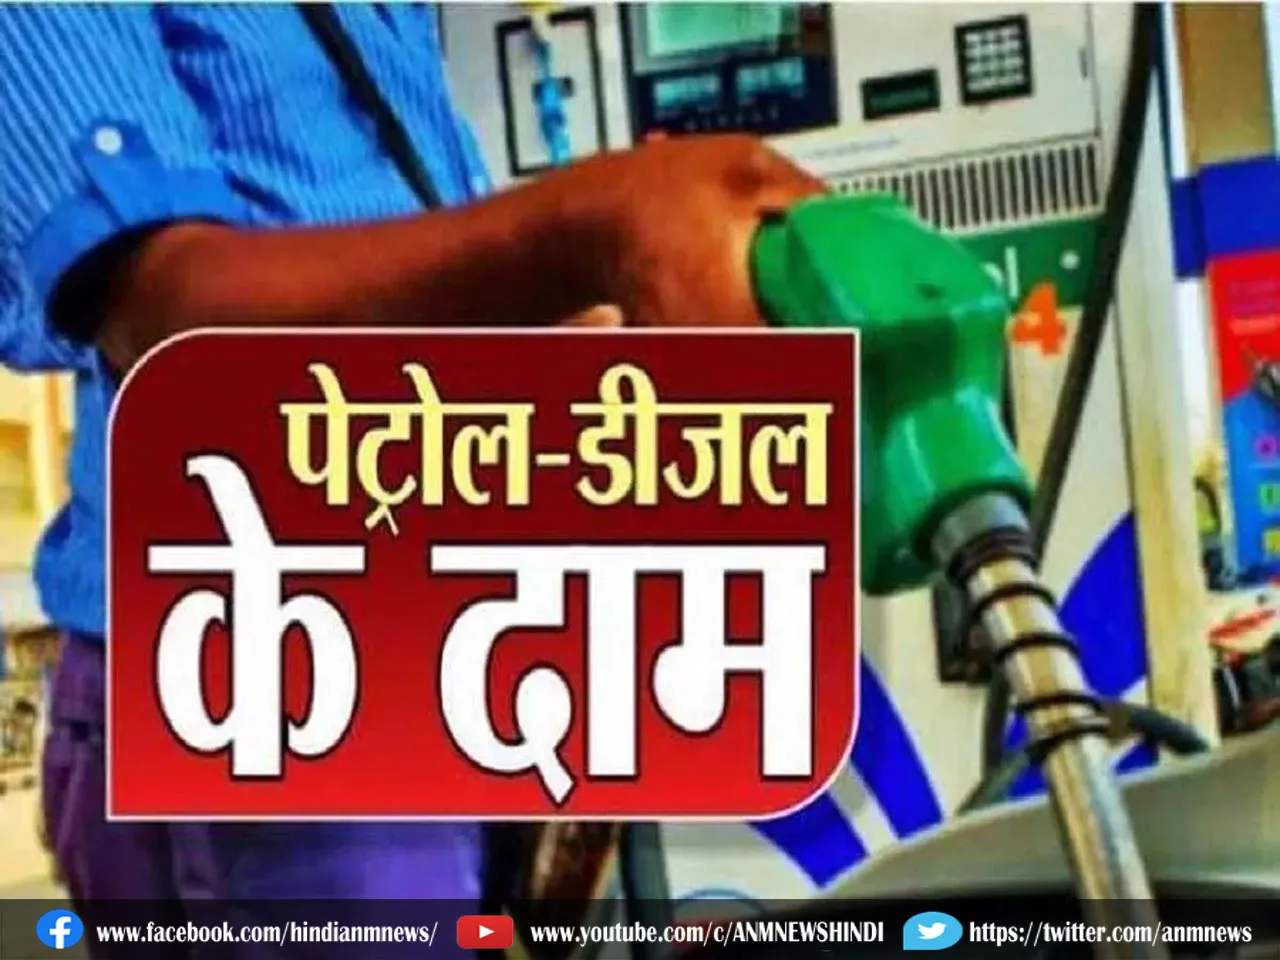 Petrol Diesel Price Today: गाड़ी चालकों के लिए राहत की खबर